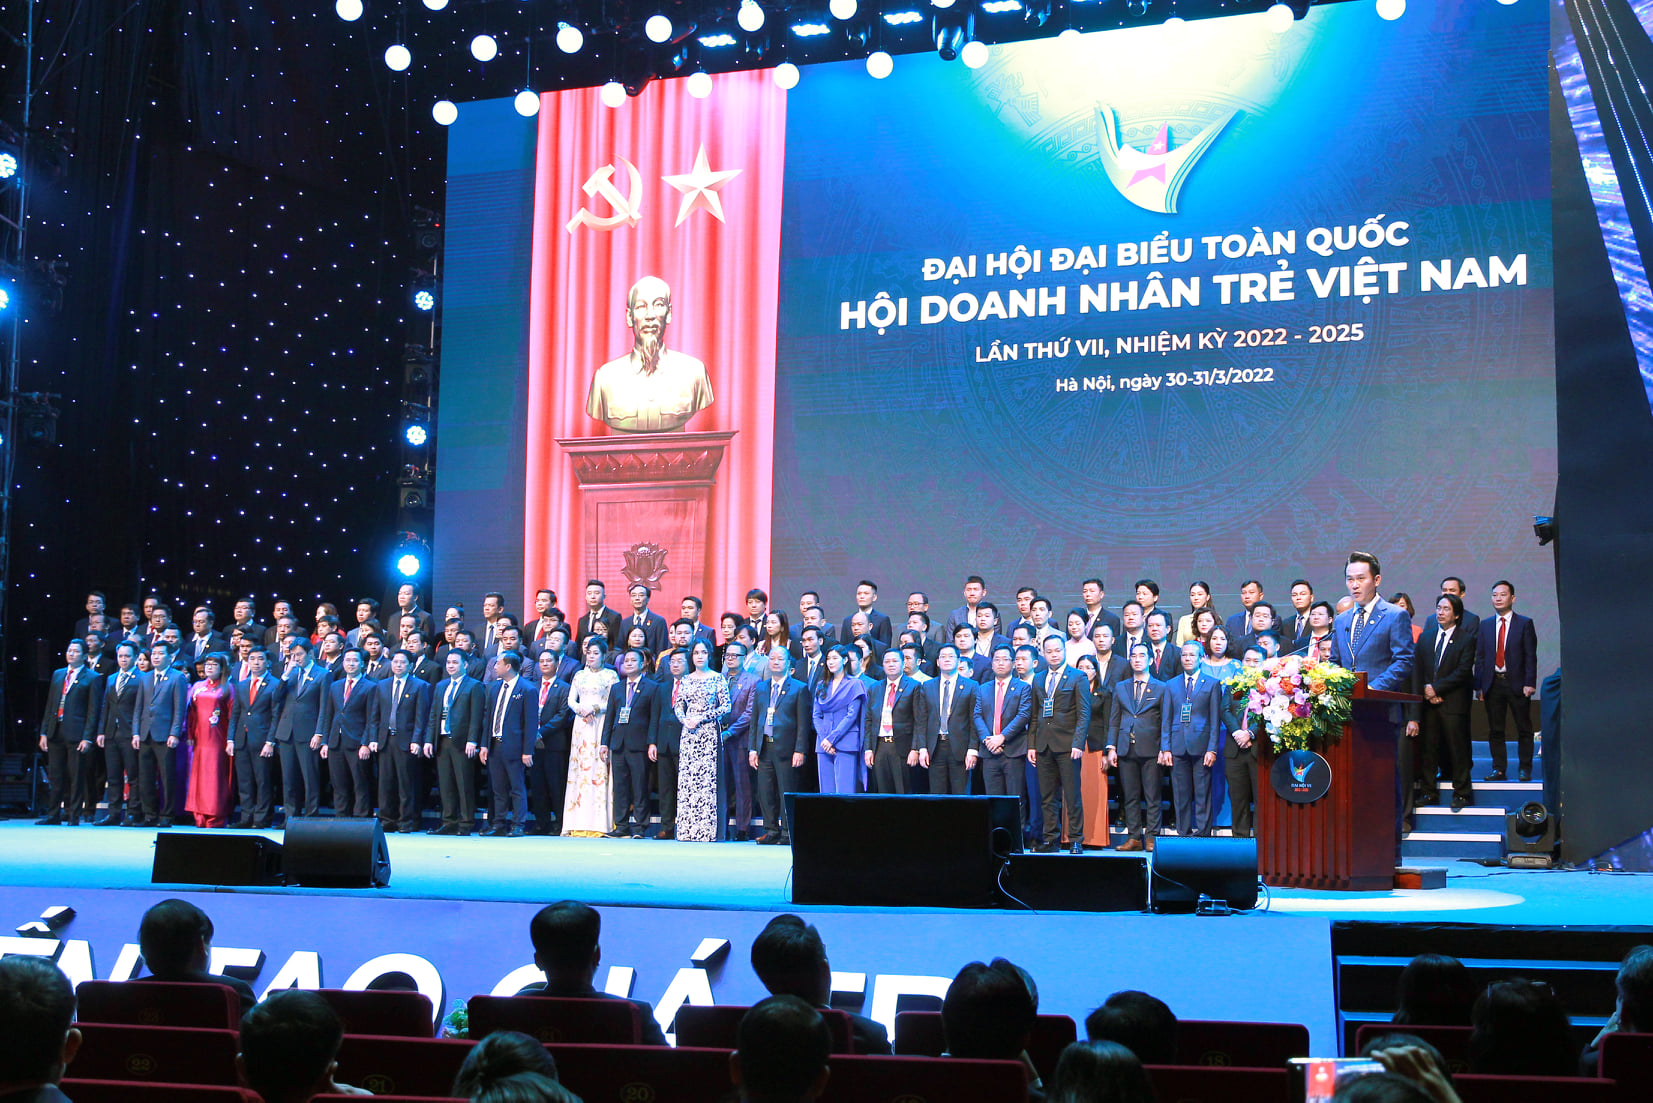 Tại Đại hội, các đại biểu đã hiệp thương bầu 154 Ủy viên Ủy ban Trung ương Hội doanh nhân trẻ Việt Nam khóa 7; bầu Ban kiểm tra Ủy ban Trung ương Hội gồm 7 người. Hội nghị Ủy ban Trung ương Hội lần thứ nhất, khóa 7 đã hiệp thương chọn cử Đoàn Chủ tịch gồm 55 người.